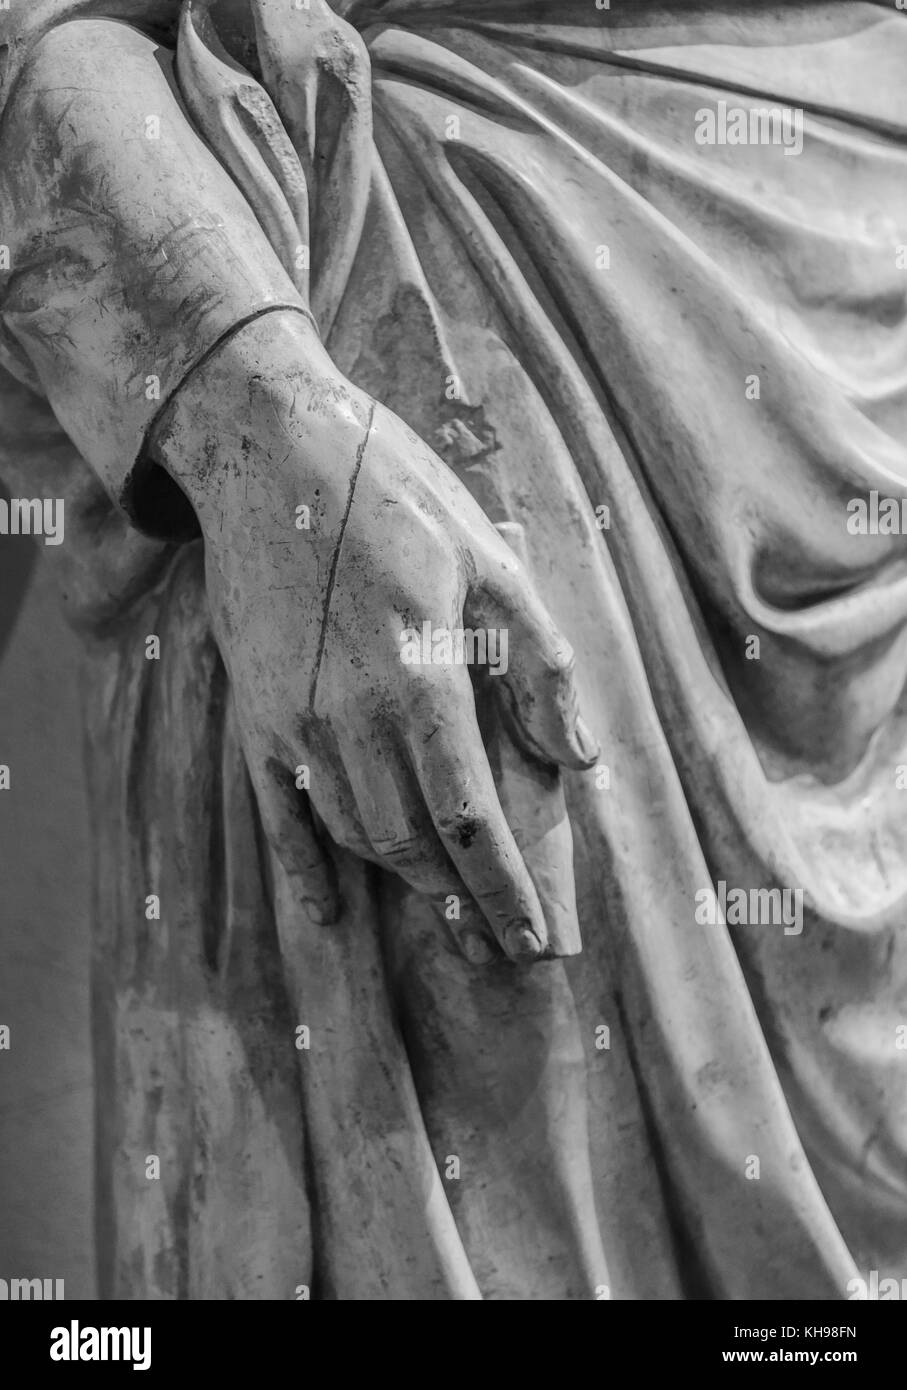 Statue de pierre détail de main humaine Banque D'Images